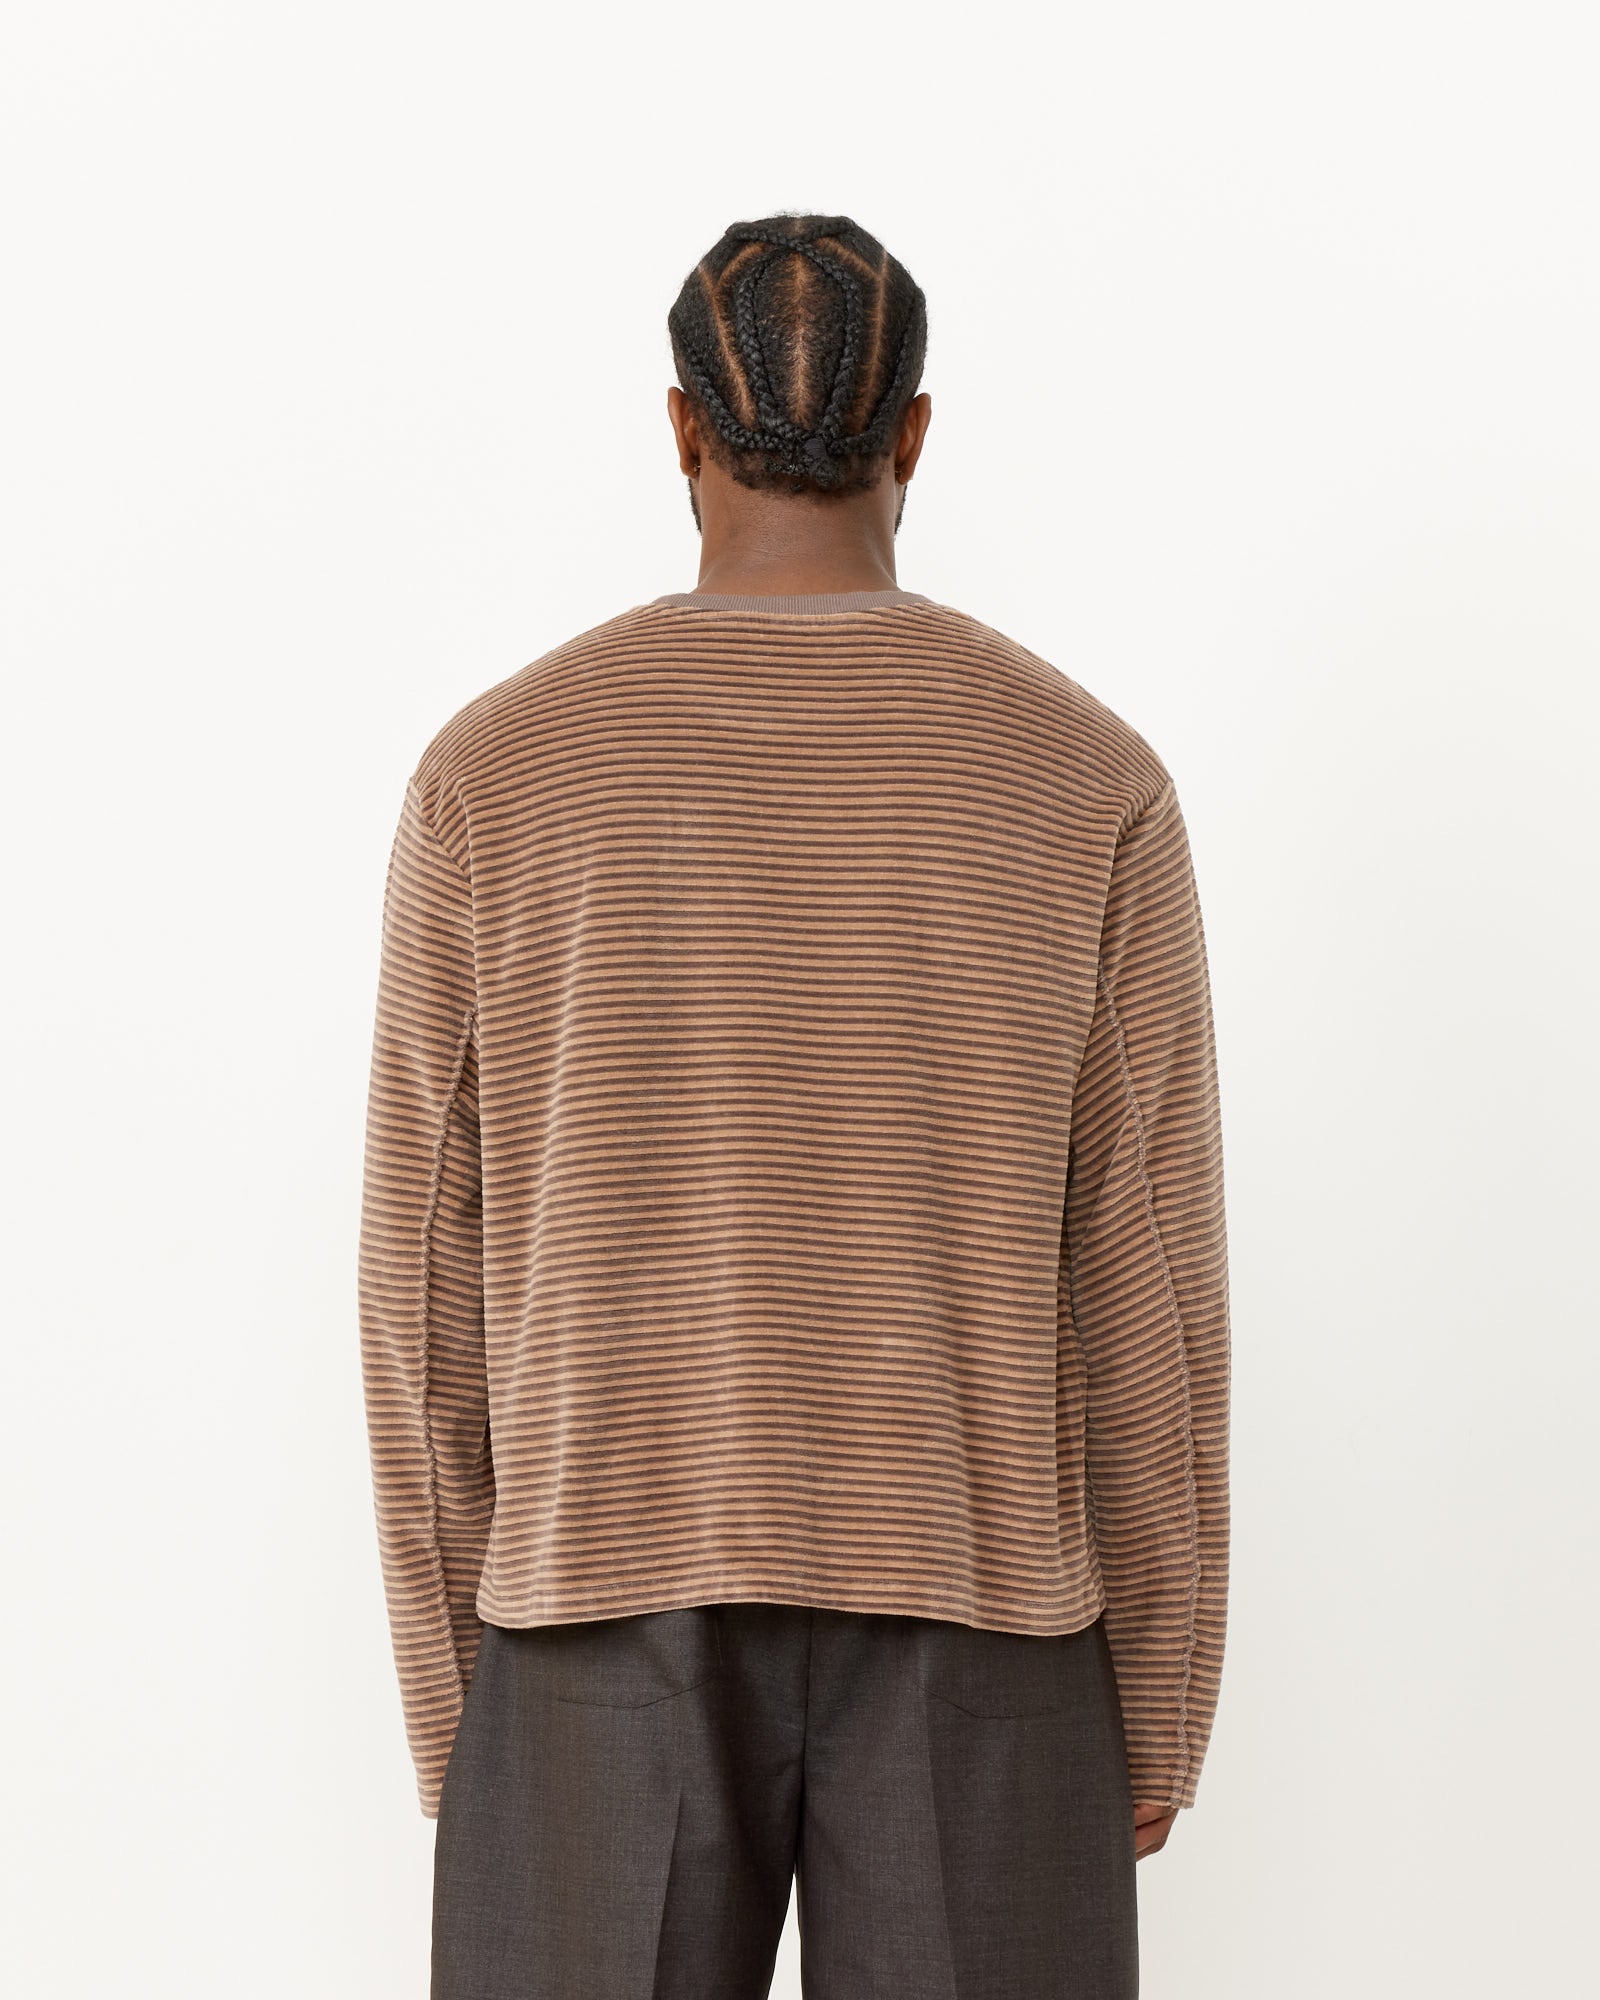 Striped Velvet Sweater in Caramel